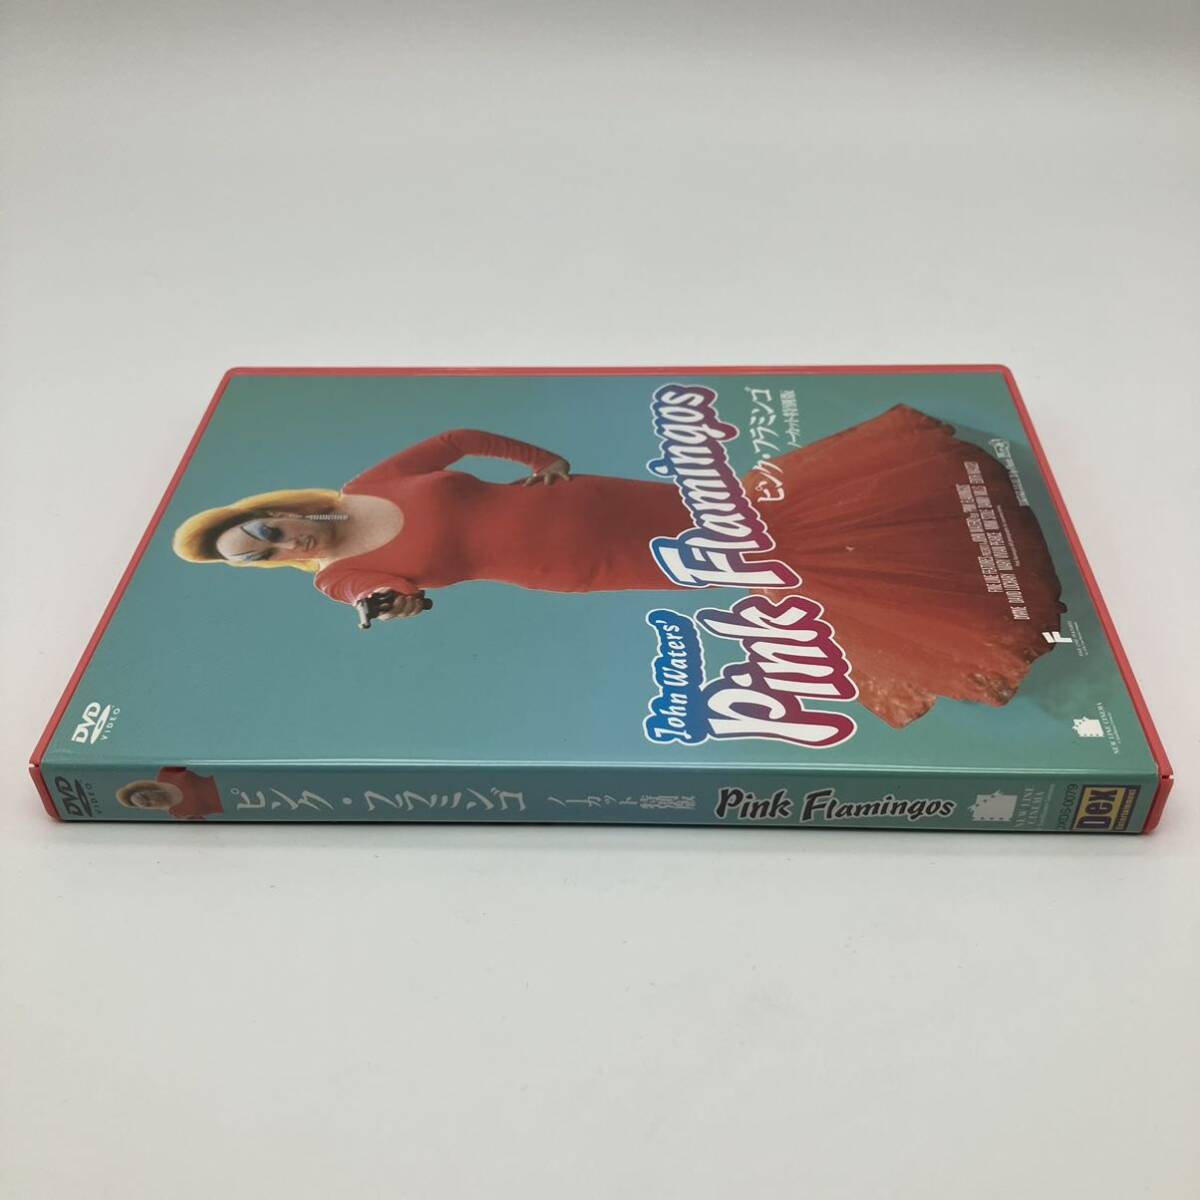 ピンク・フラミンゴ ノーカット特別版 セル版 DVD BOX 帯付 ポスター ポストカード付 希少 映画 洋画の画像7